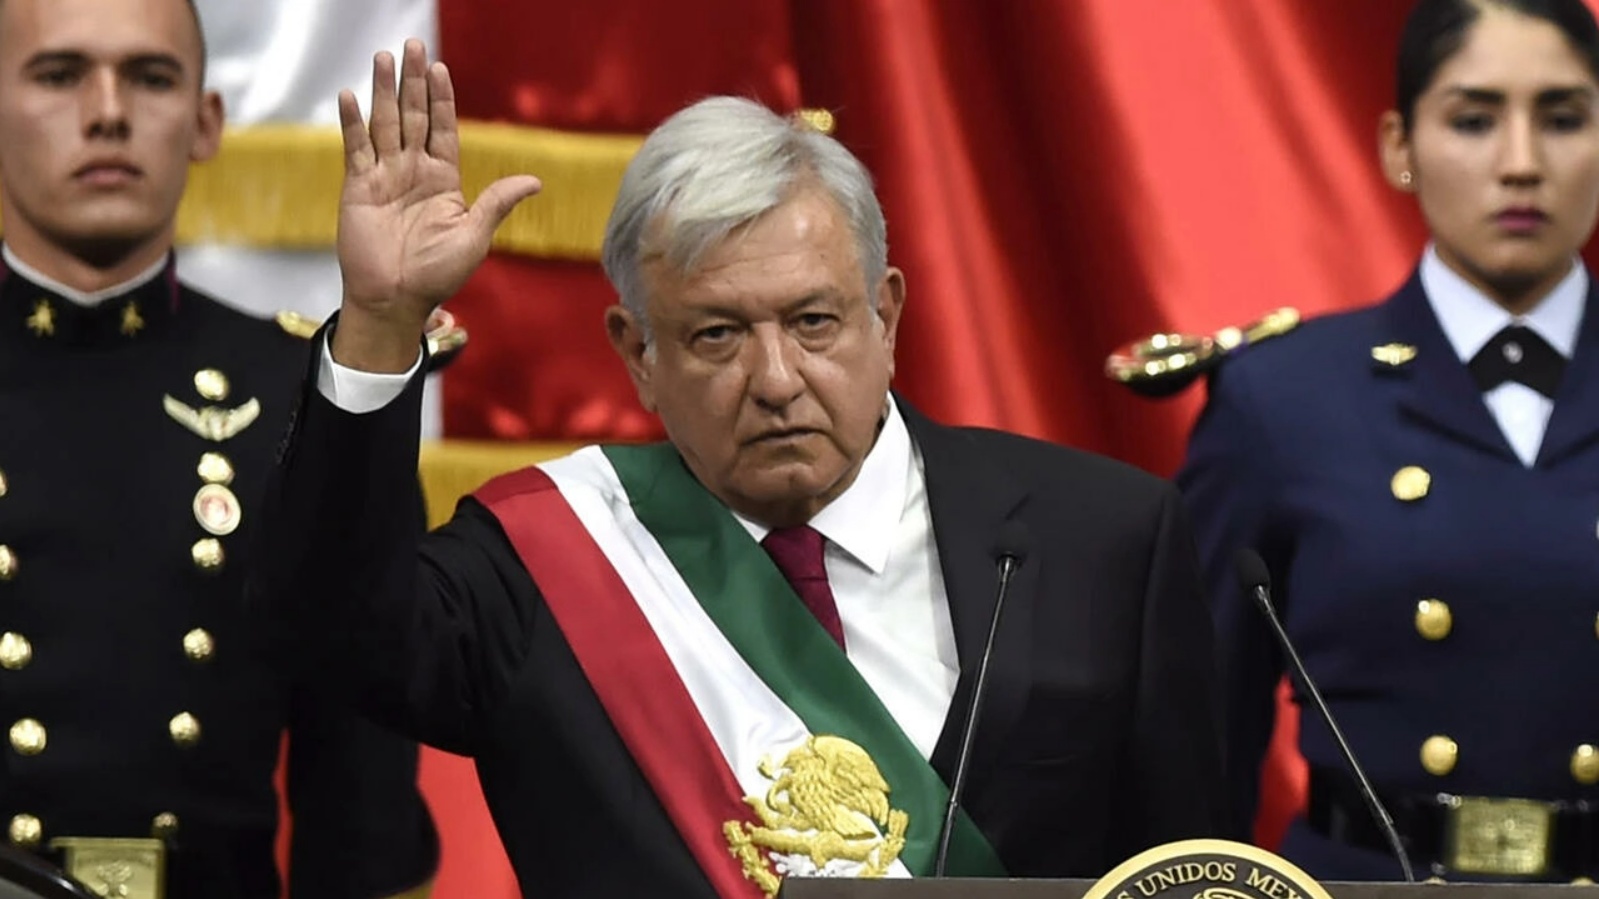 رئيس المكسيك أندريس مانويل لوبيز أوبرادور يؤدي اليمين الدستورية